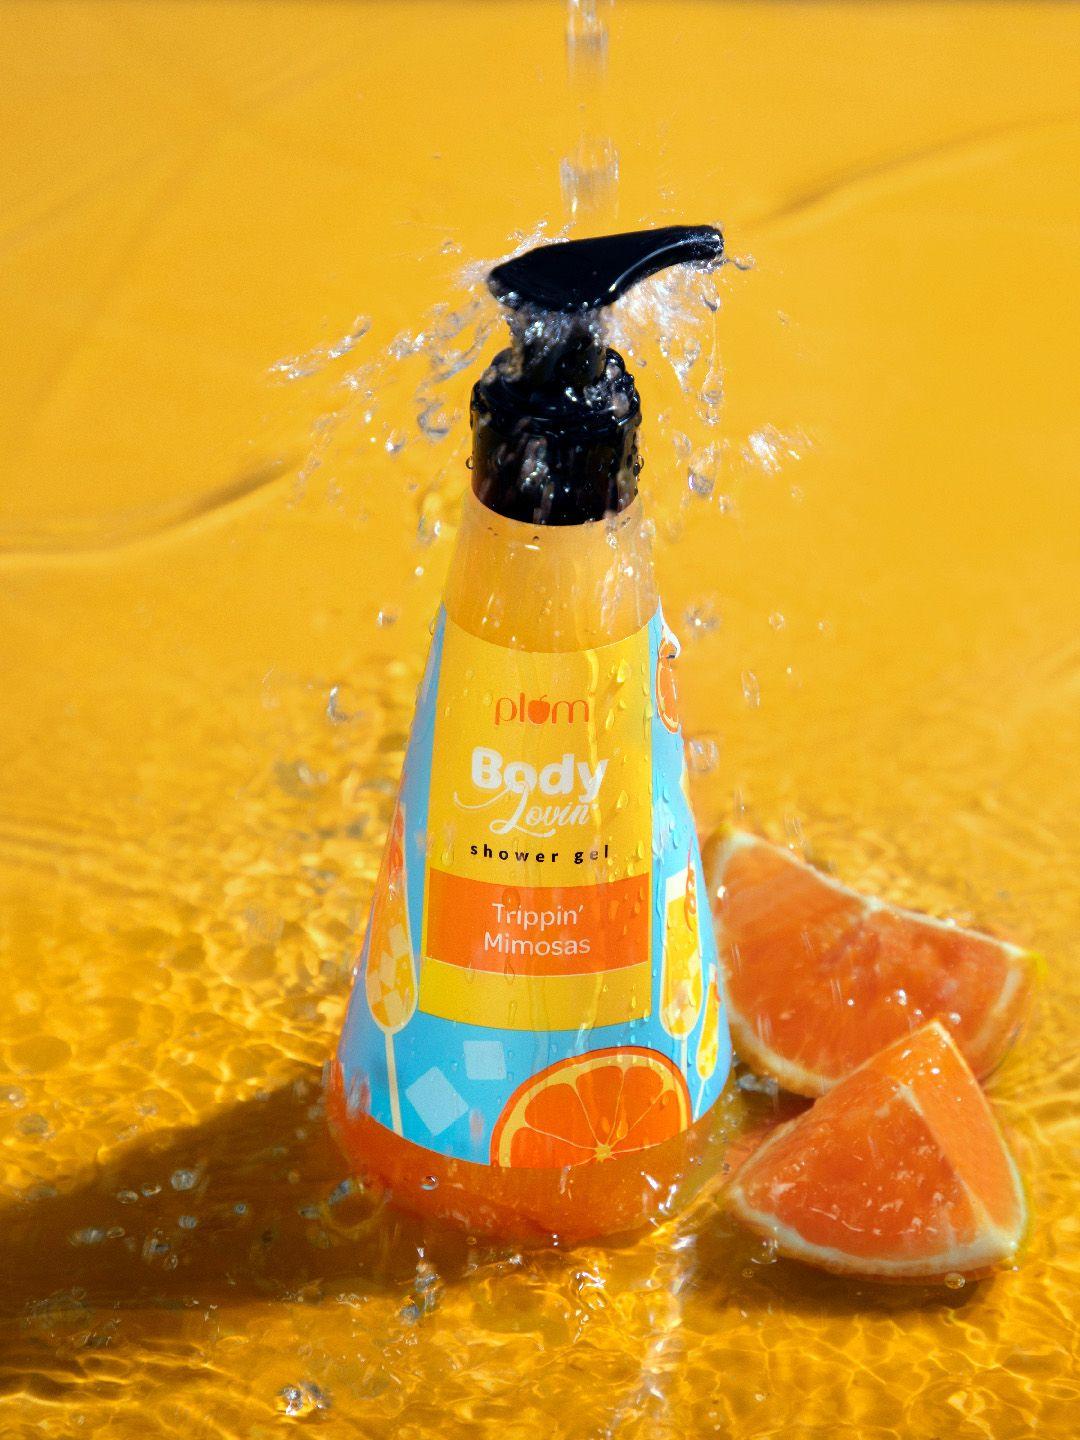 plum bodylovin' trippin' mimosas shower gel - 240 ml